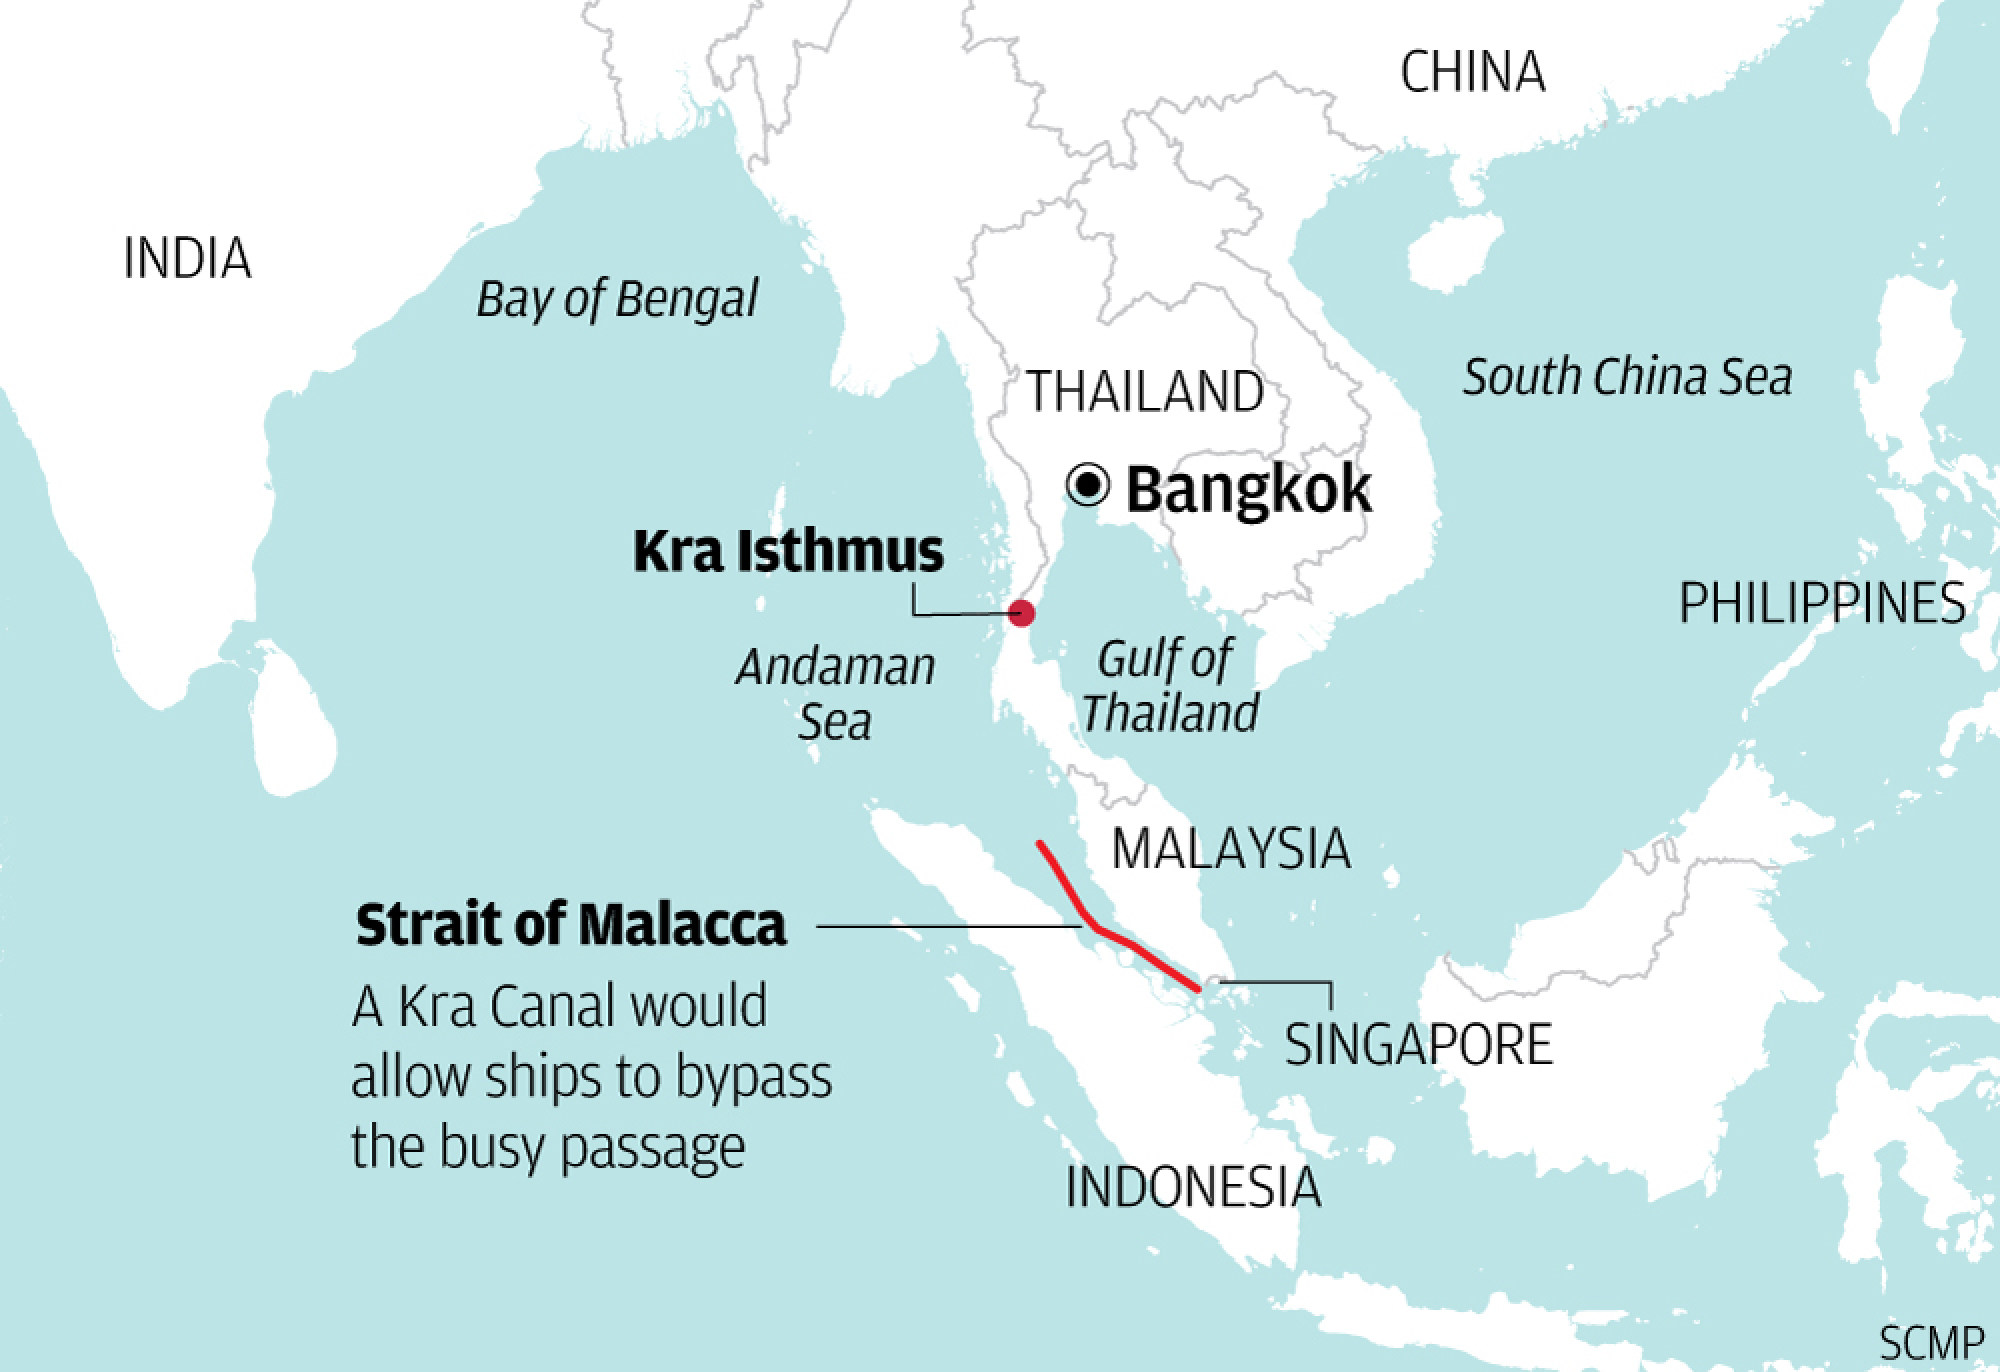 Tailandia construye una ruta marítima por valor de 28.000 millones de dólares que evita el estrecho de Malaca: “Más barata, más rápida y más segura”